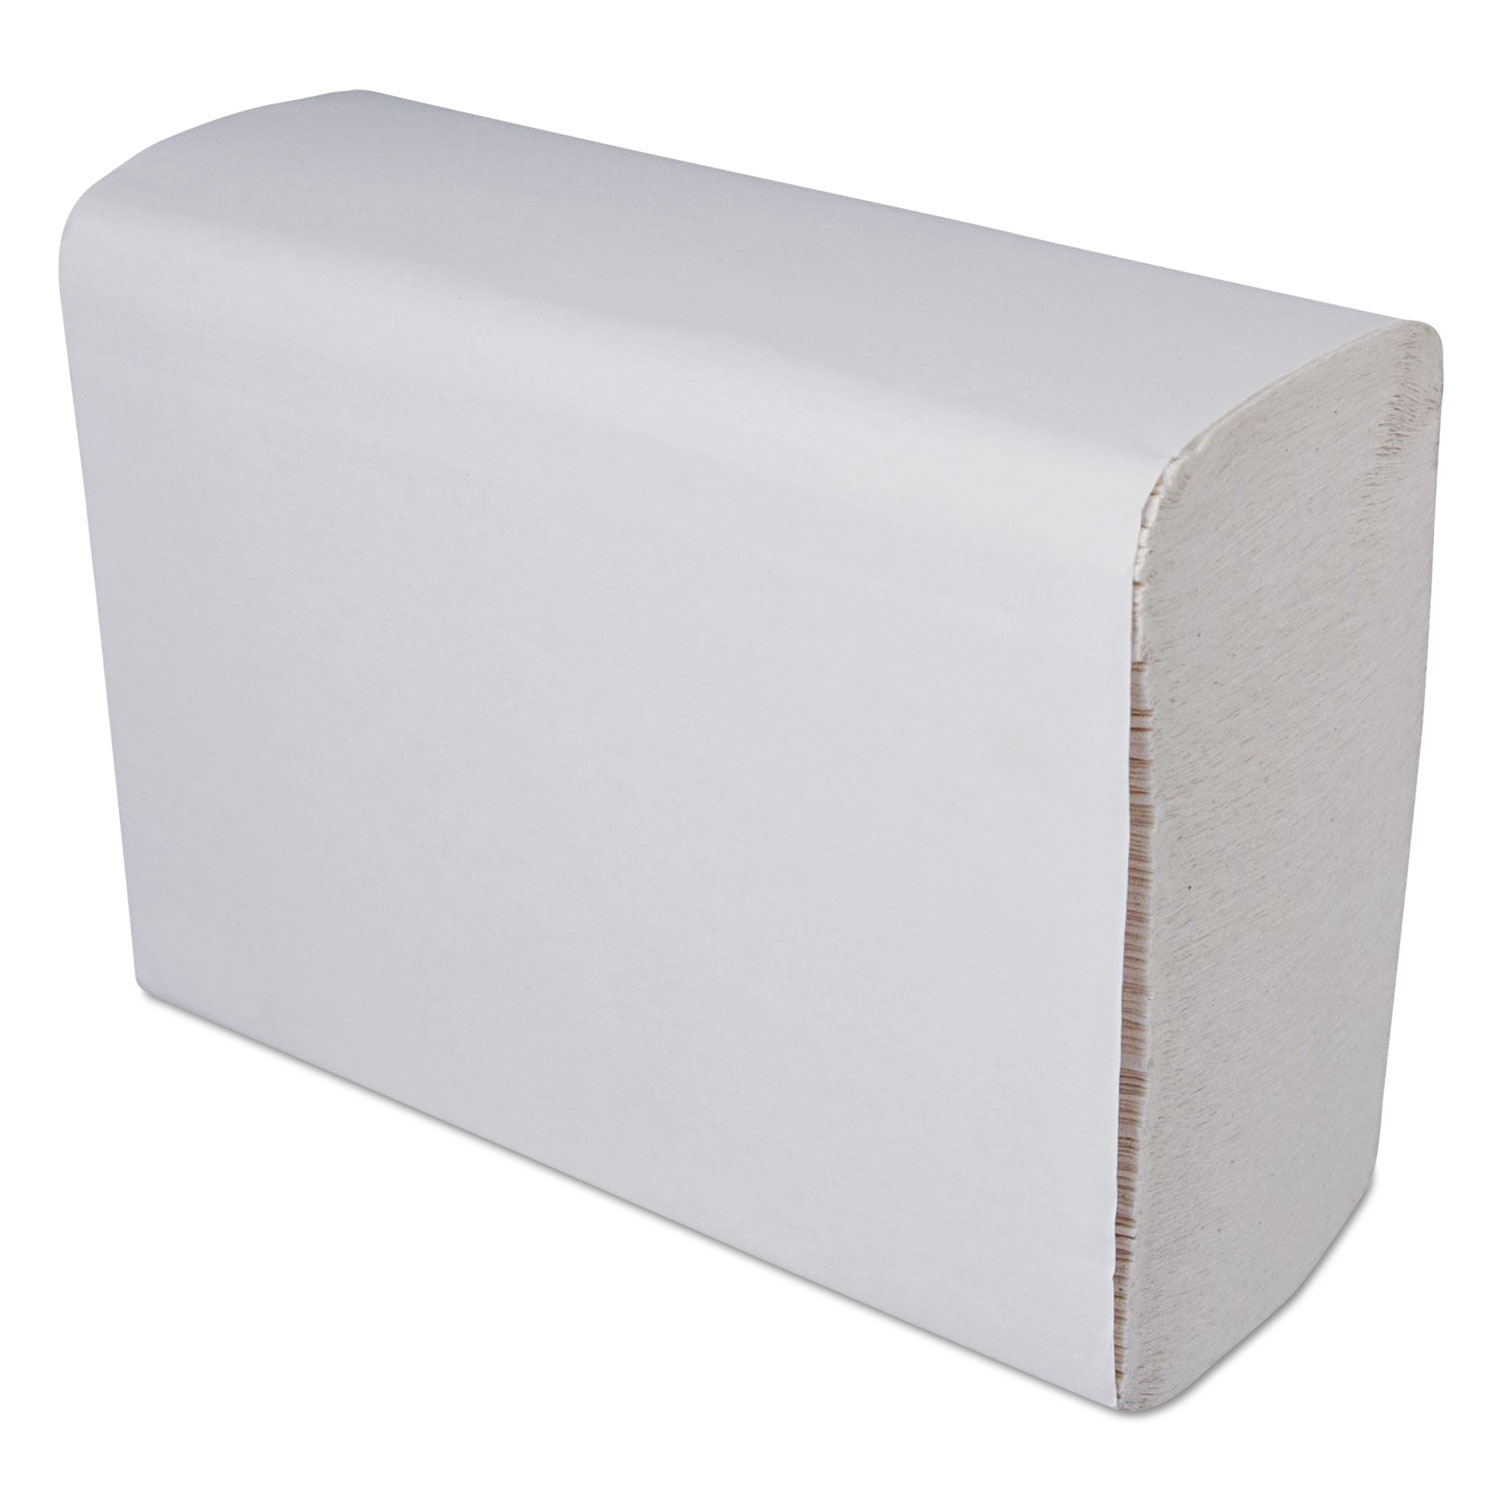  GEN GEN1940 Multi-Fold Paper Towels, 1-Ply, White, 9 1/4 x 9 1/4, 250 Towels/Pack, 16 Packs/Carton (GEN1940) 